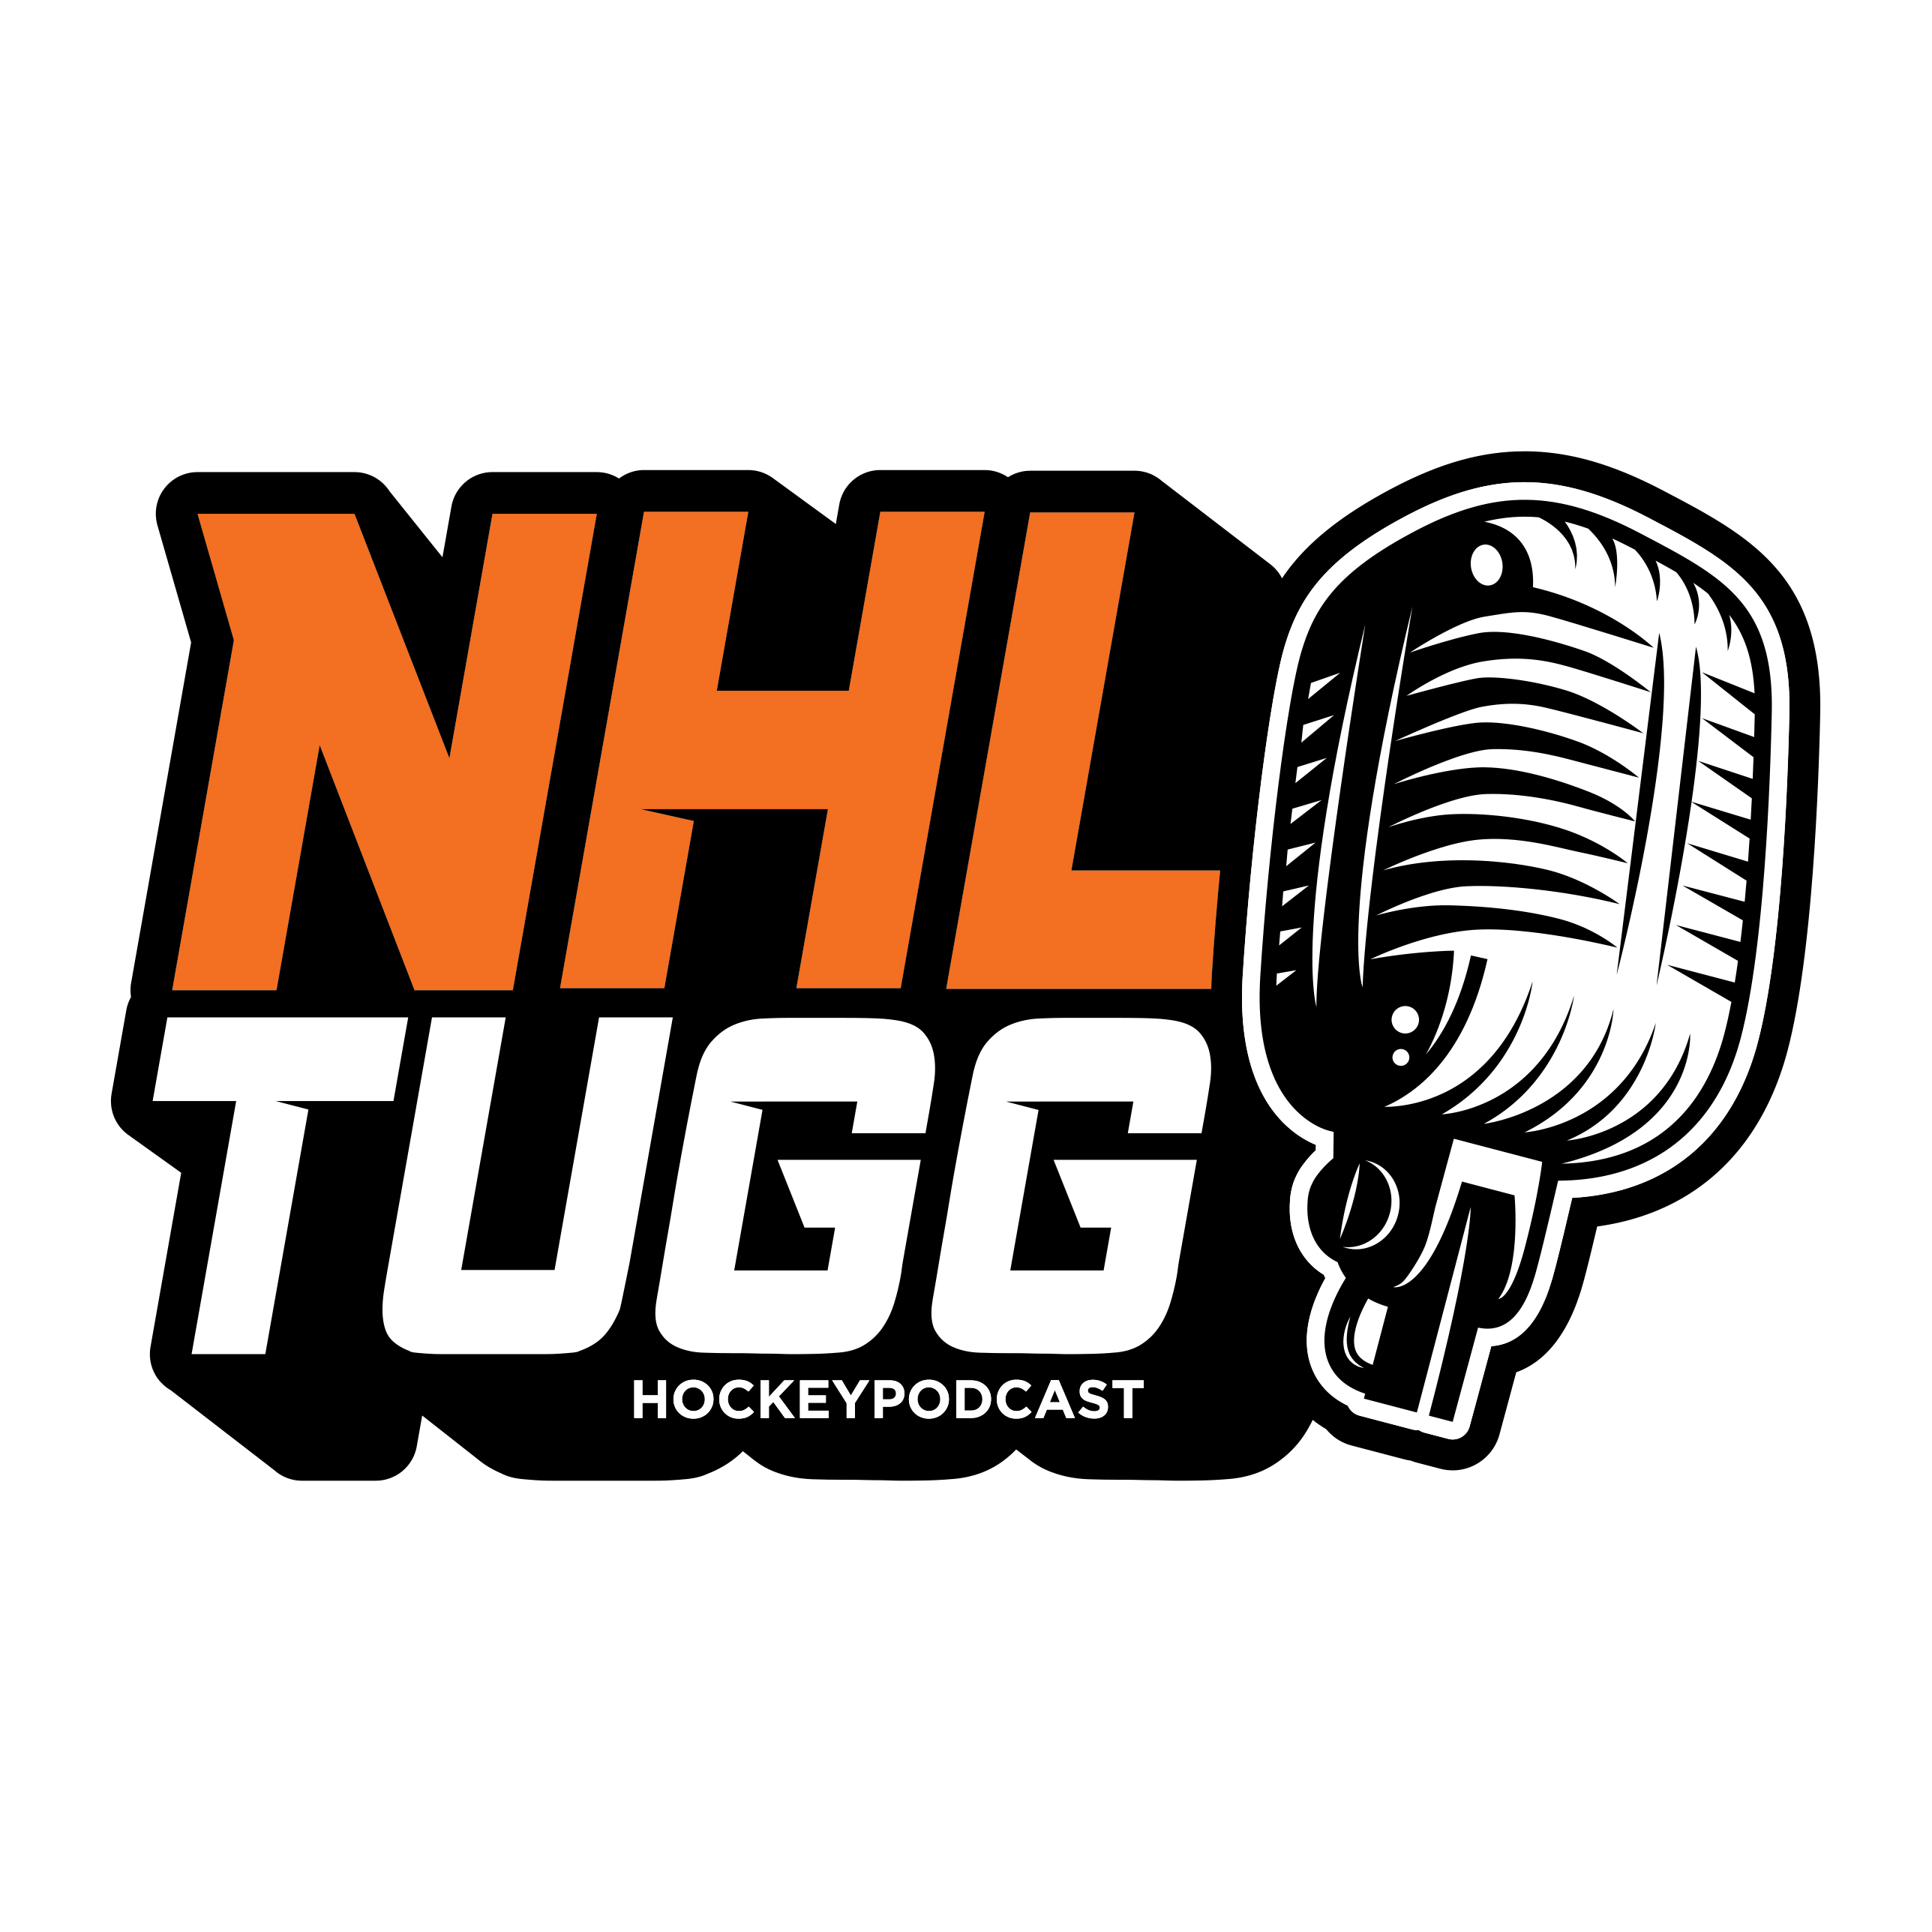 NHL-Tugg avsnitt 77 “Drömkedjan”